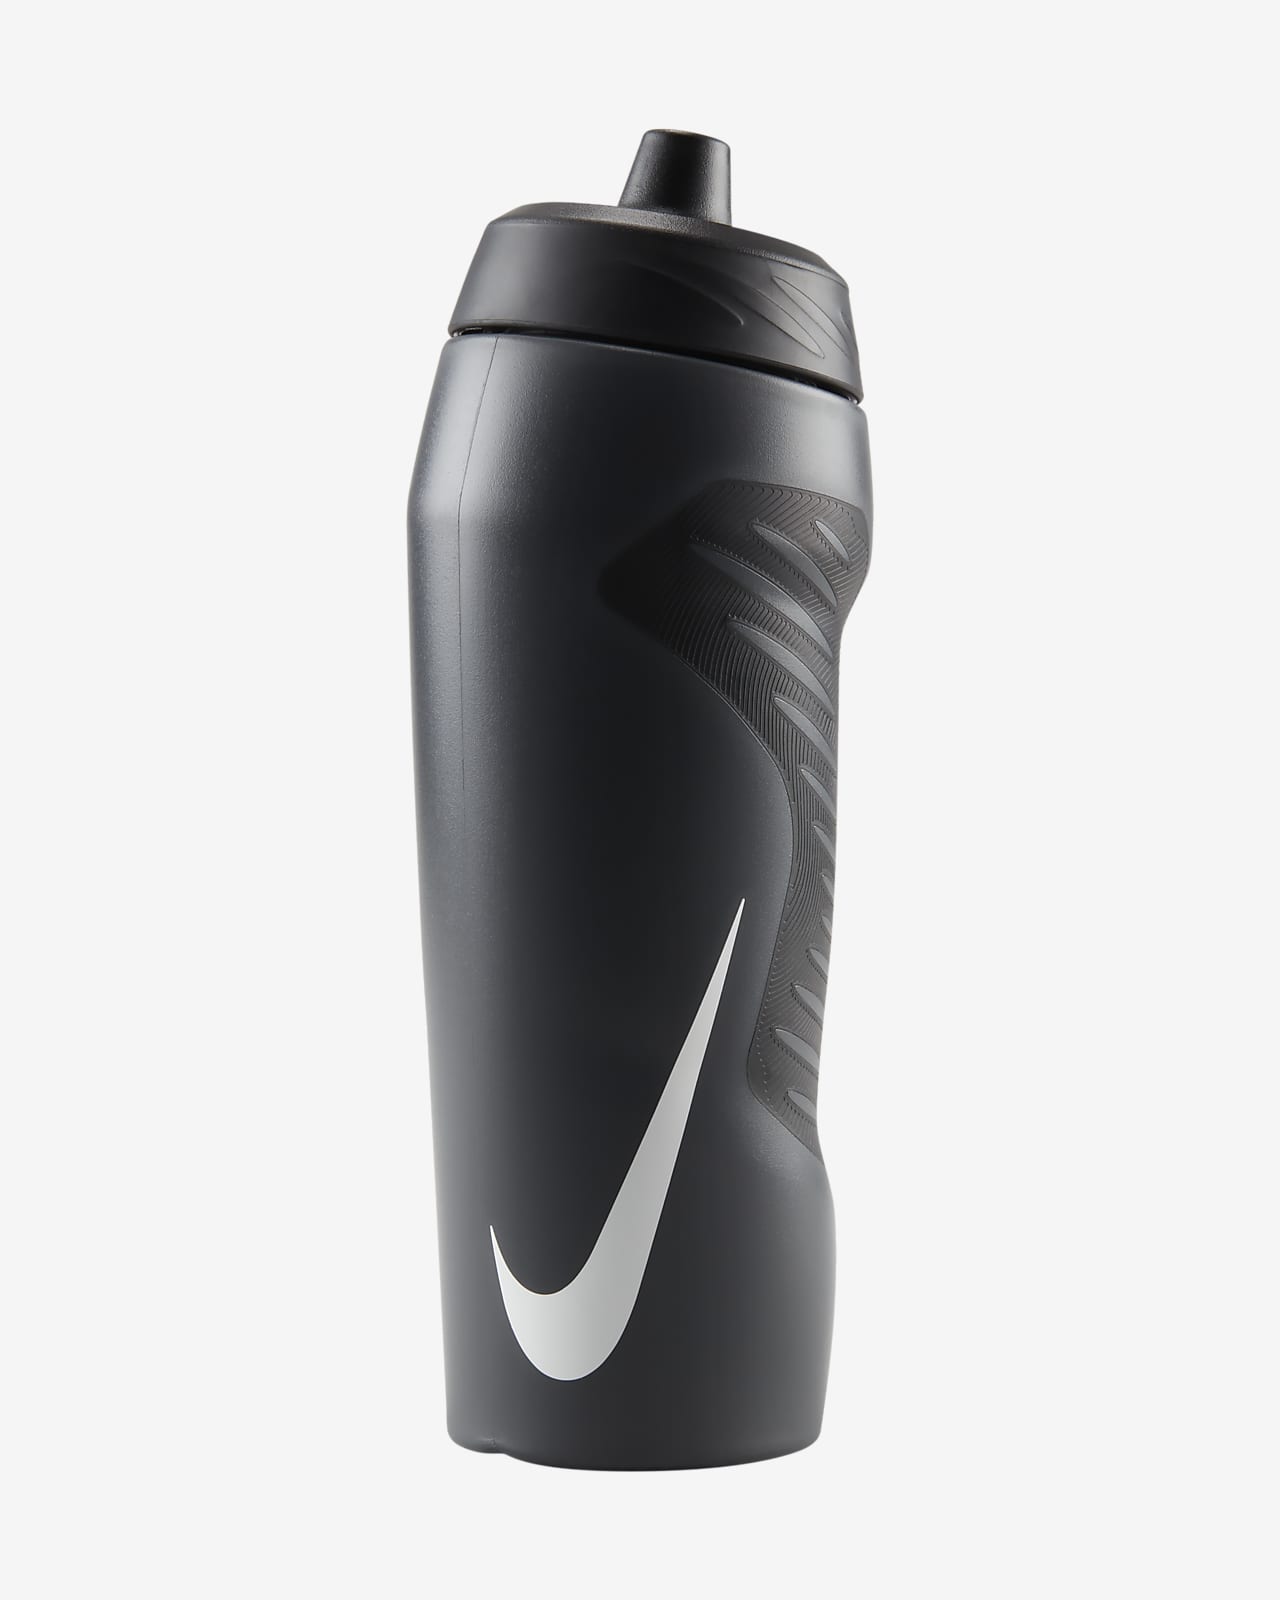 Nike 710ml approx. HyperFuel Water Bottle. Nike LU